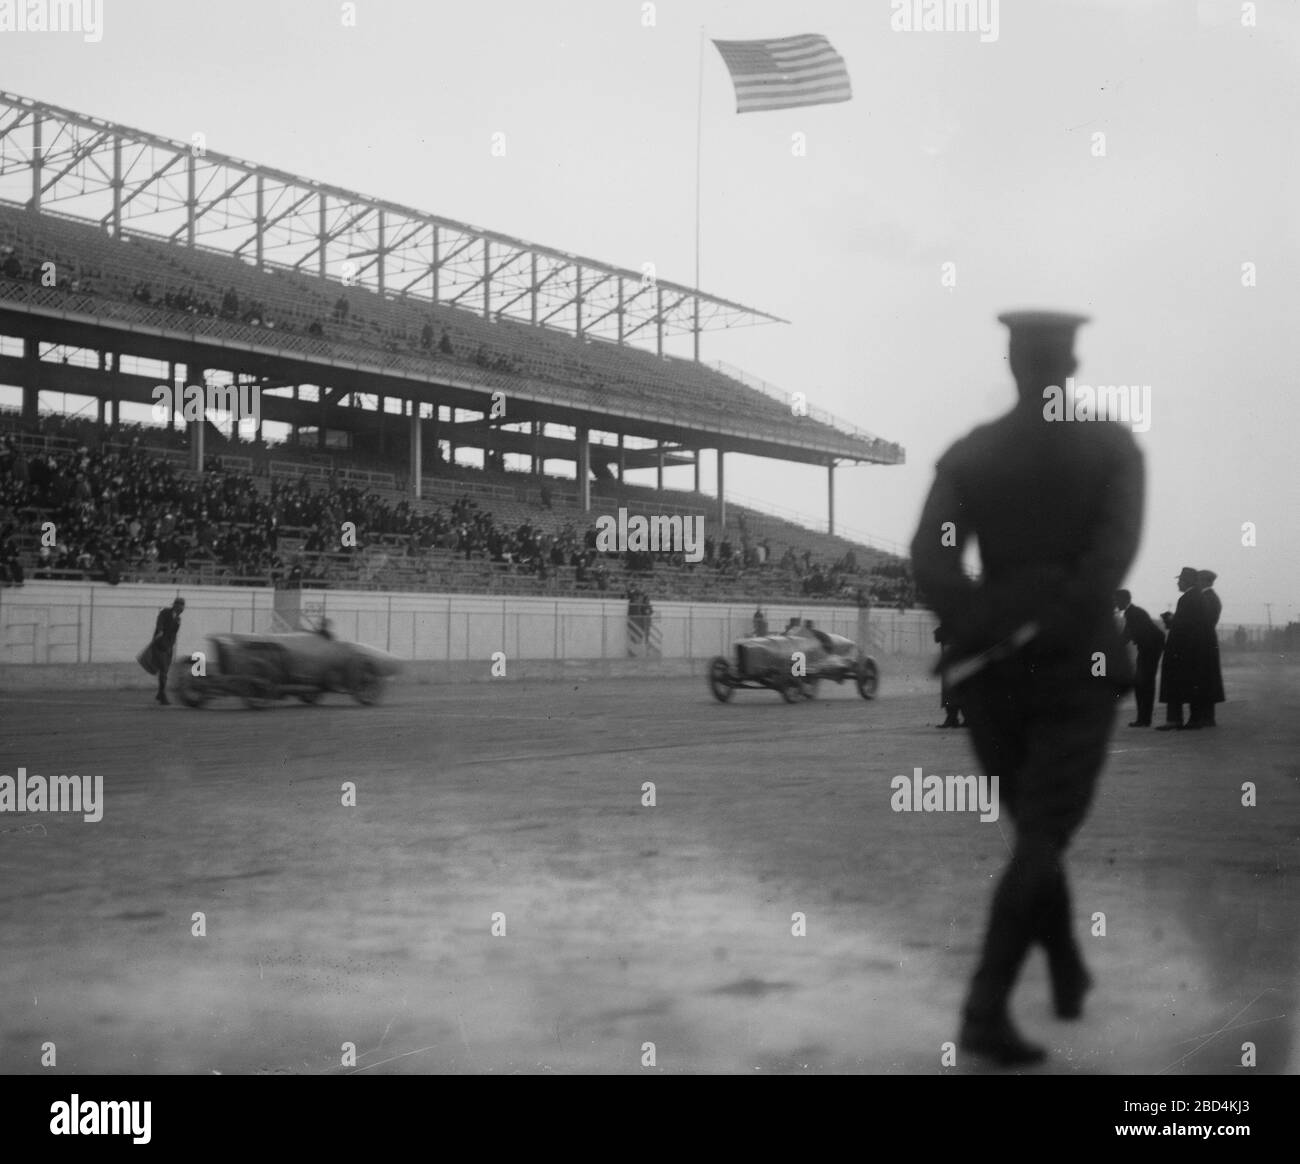 Race car drivers Bob Burman and Ralph de Palma (1882-1956) at the track. Ralph de Palma won the 1915 Indianapolis 500 Stock Photo